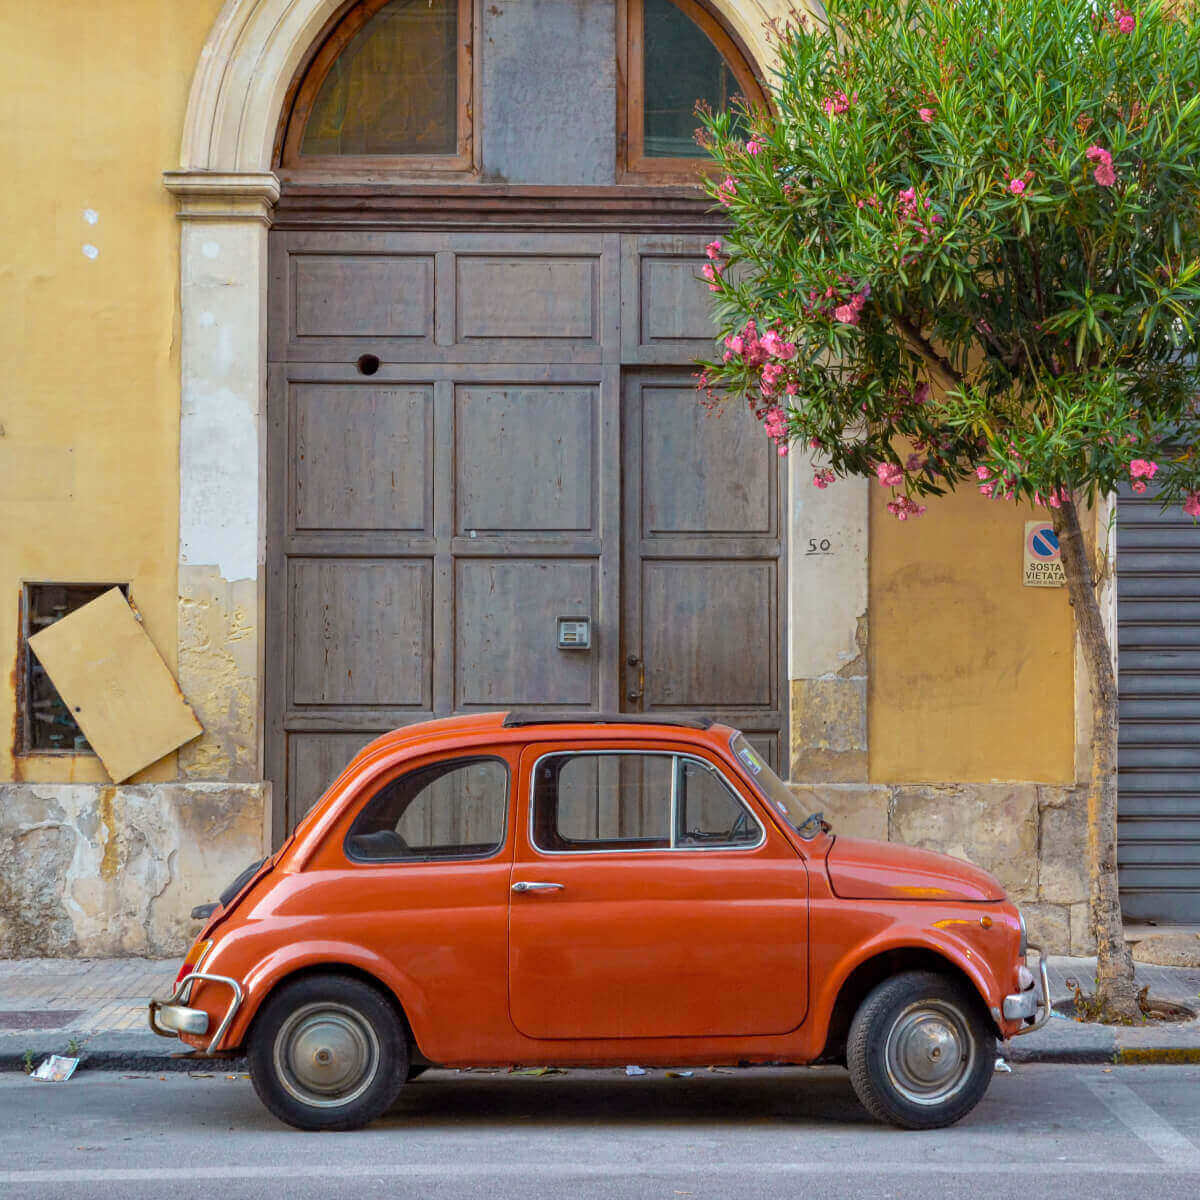 Cars in Sicily